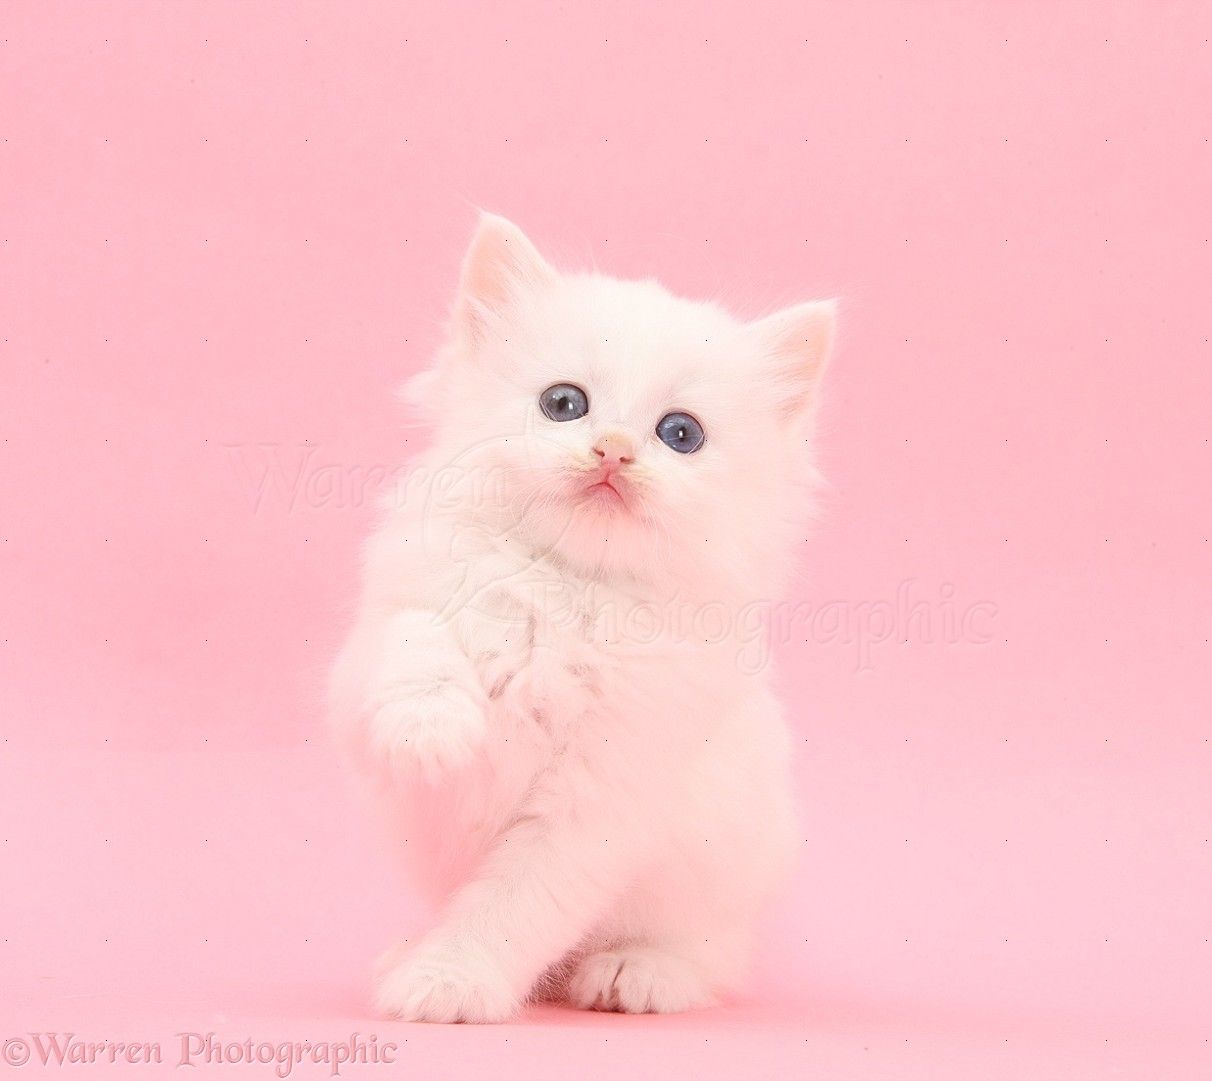 White kitten on pink background photo. White kittens, Pink background, Kitten image